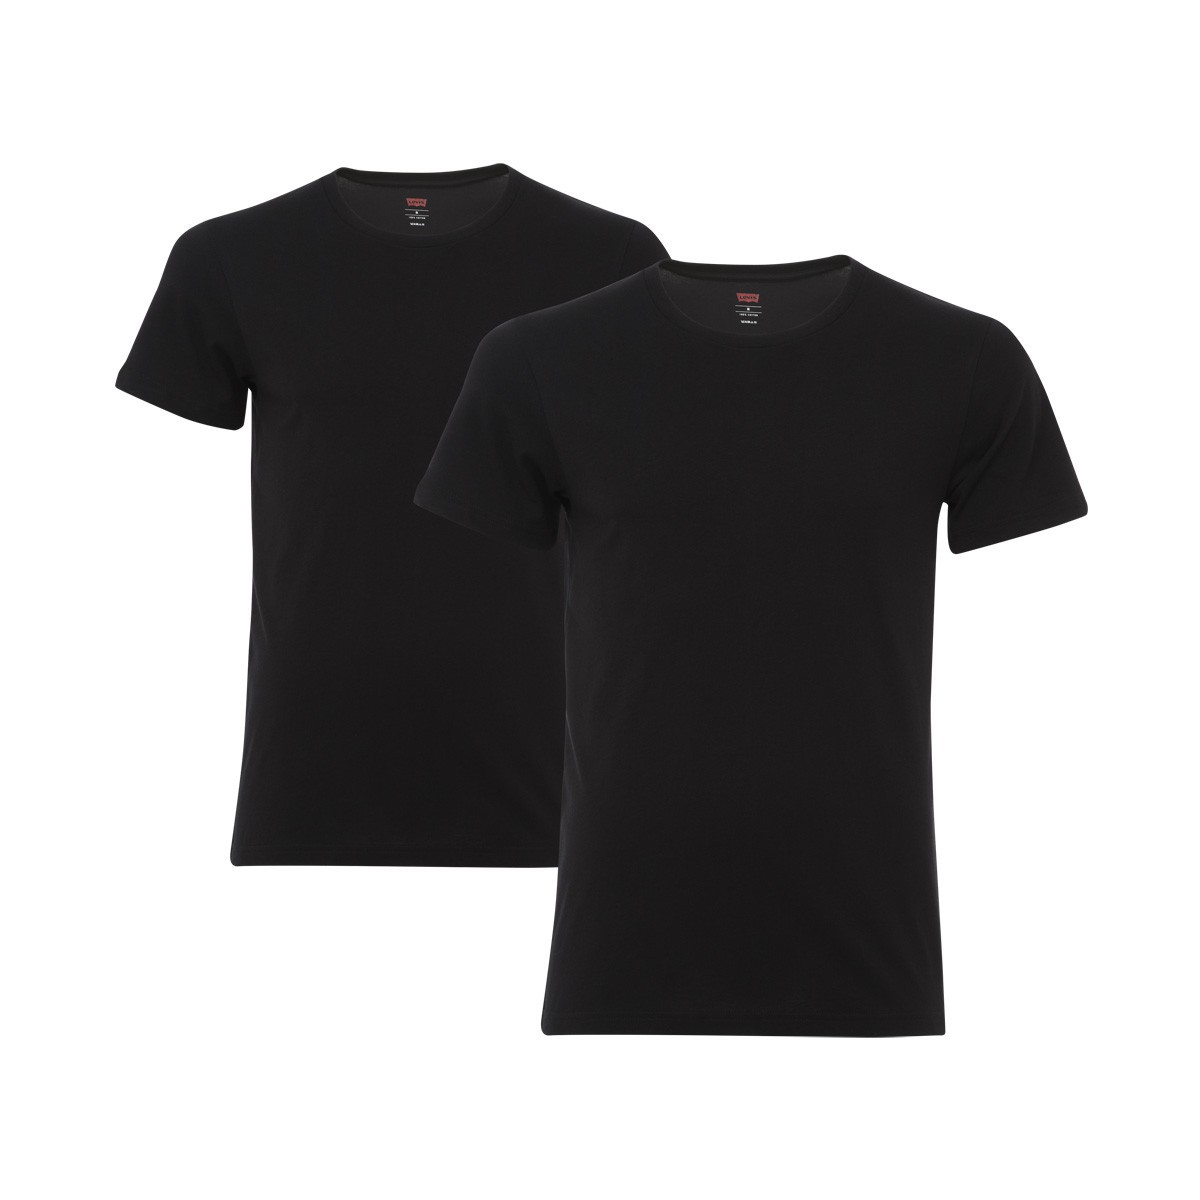 4 er Pack Levis Crew T-Shirt Men Herren Unterhemd Rundhals, Farbe:884 - jet black;Bekleidungsgröße:S